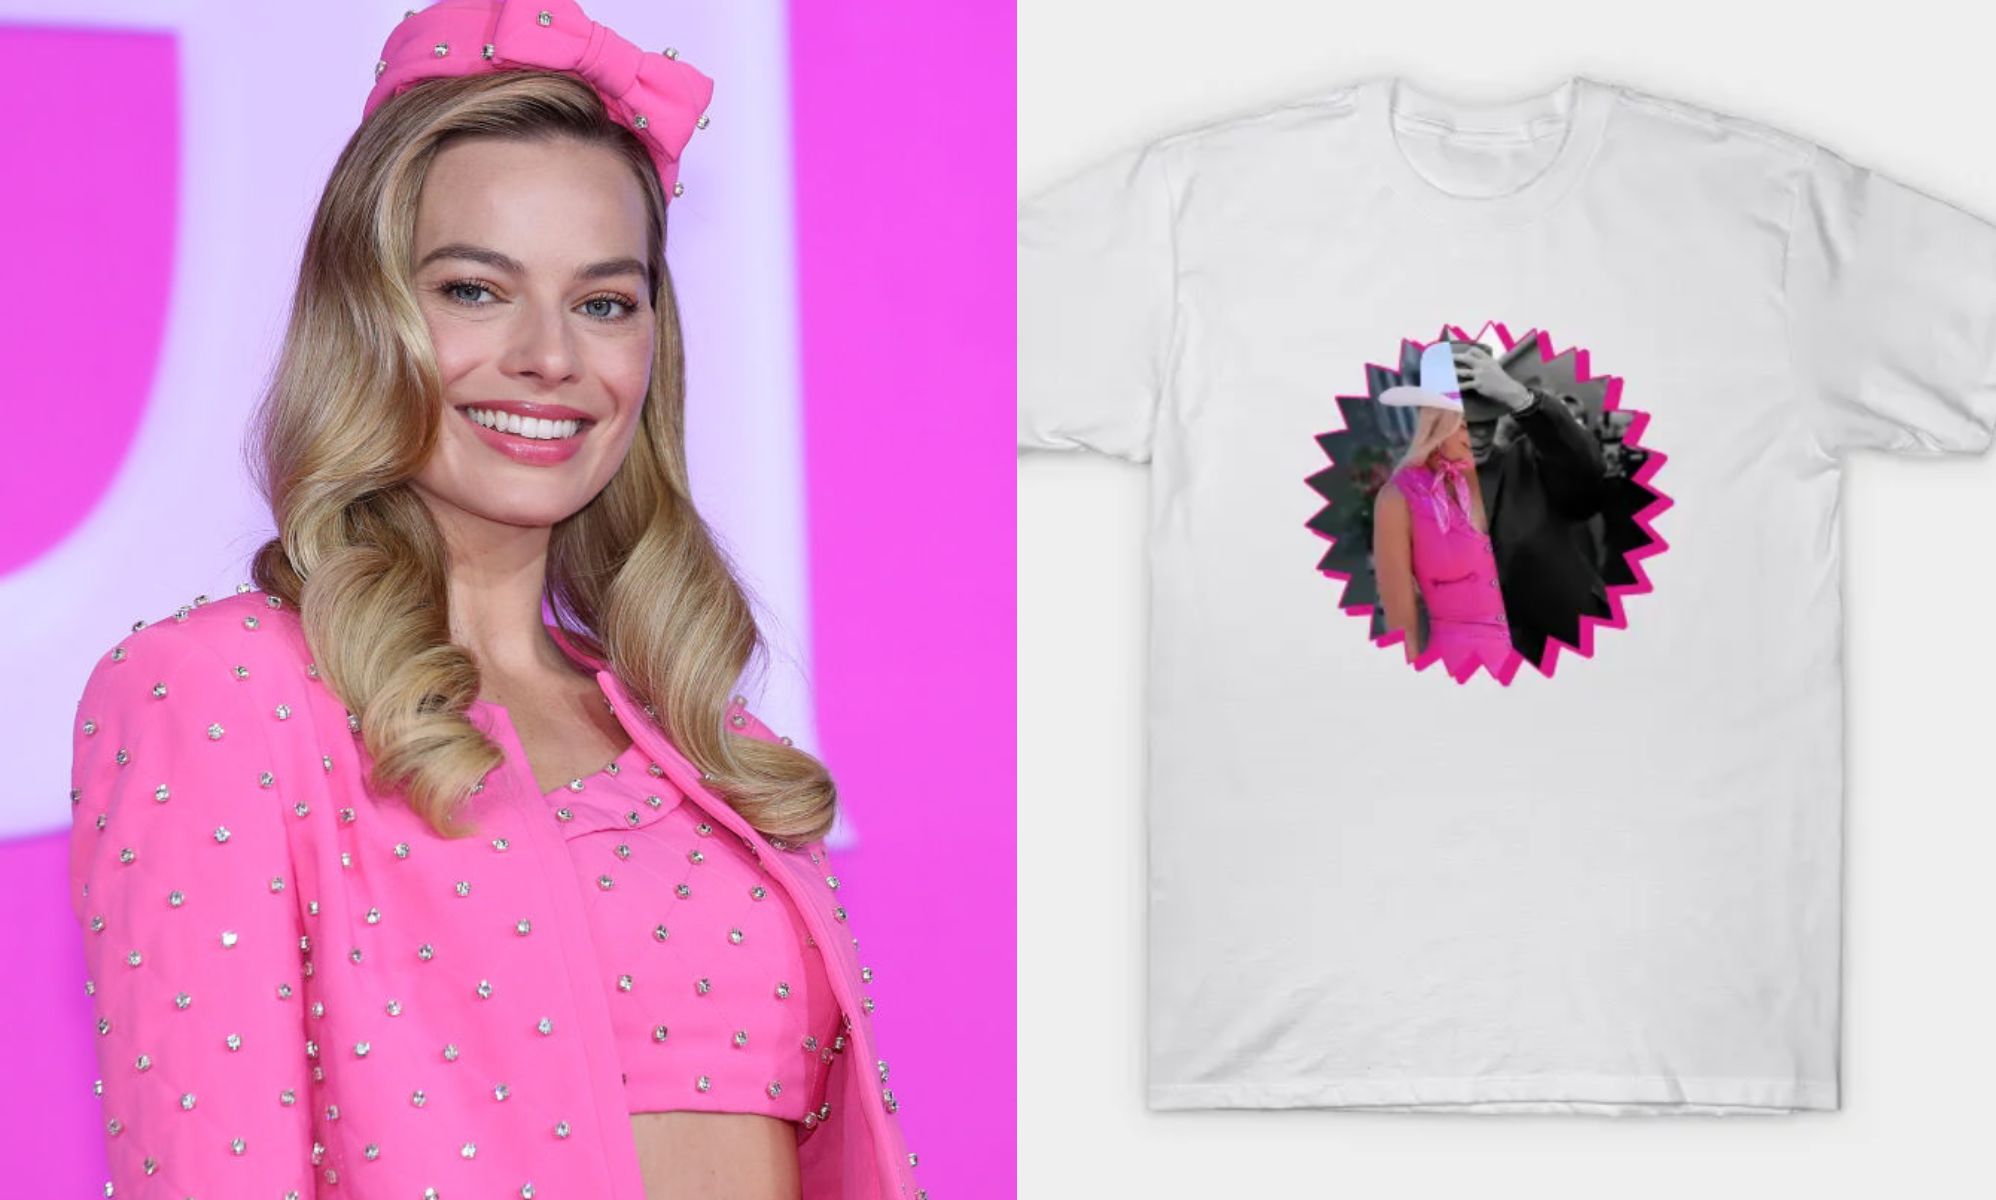 Cheap Cillian Murphy Margot Robbie Barbenheimer T Shirt, Barbie Vs  Oppenheimer T Shirt - Allsoymade